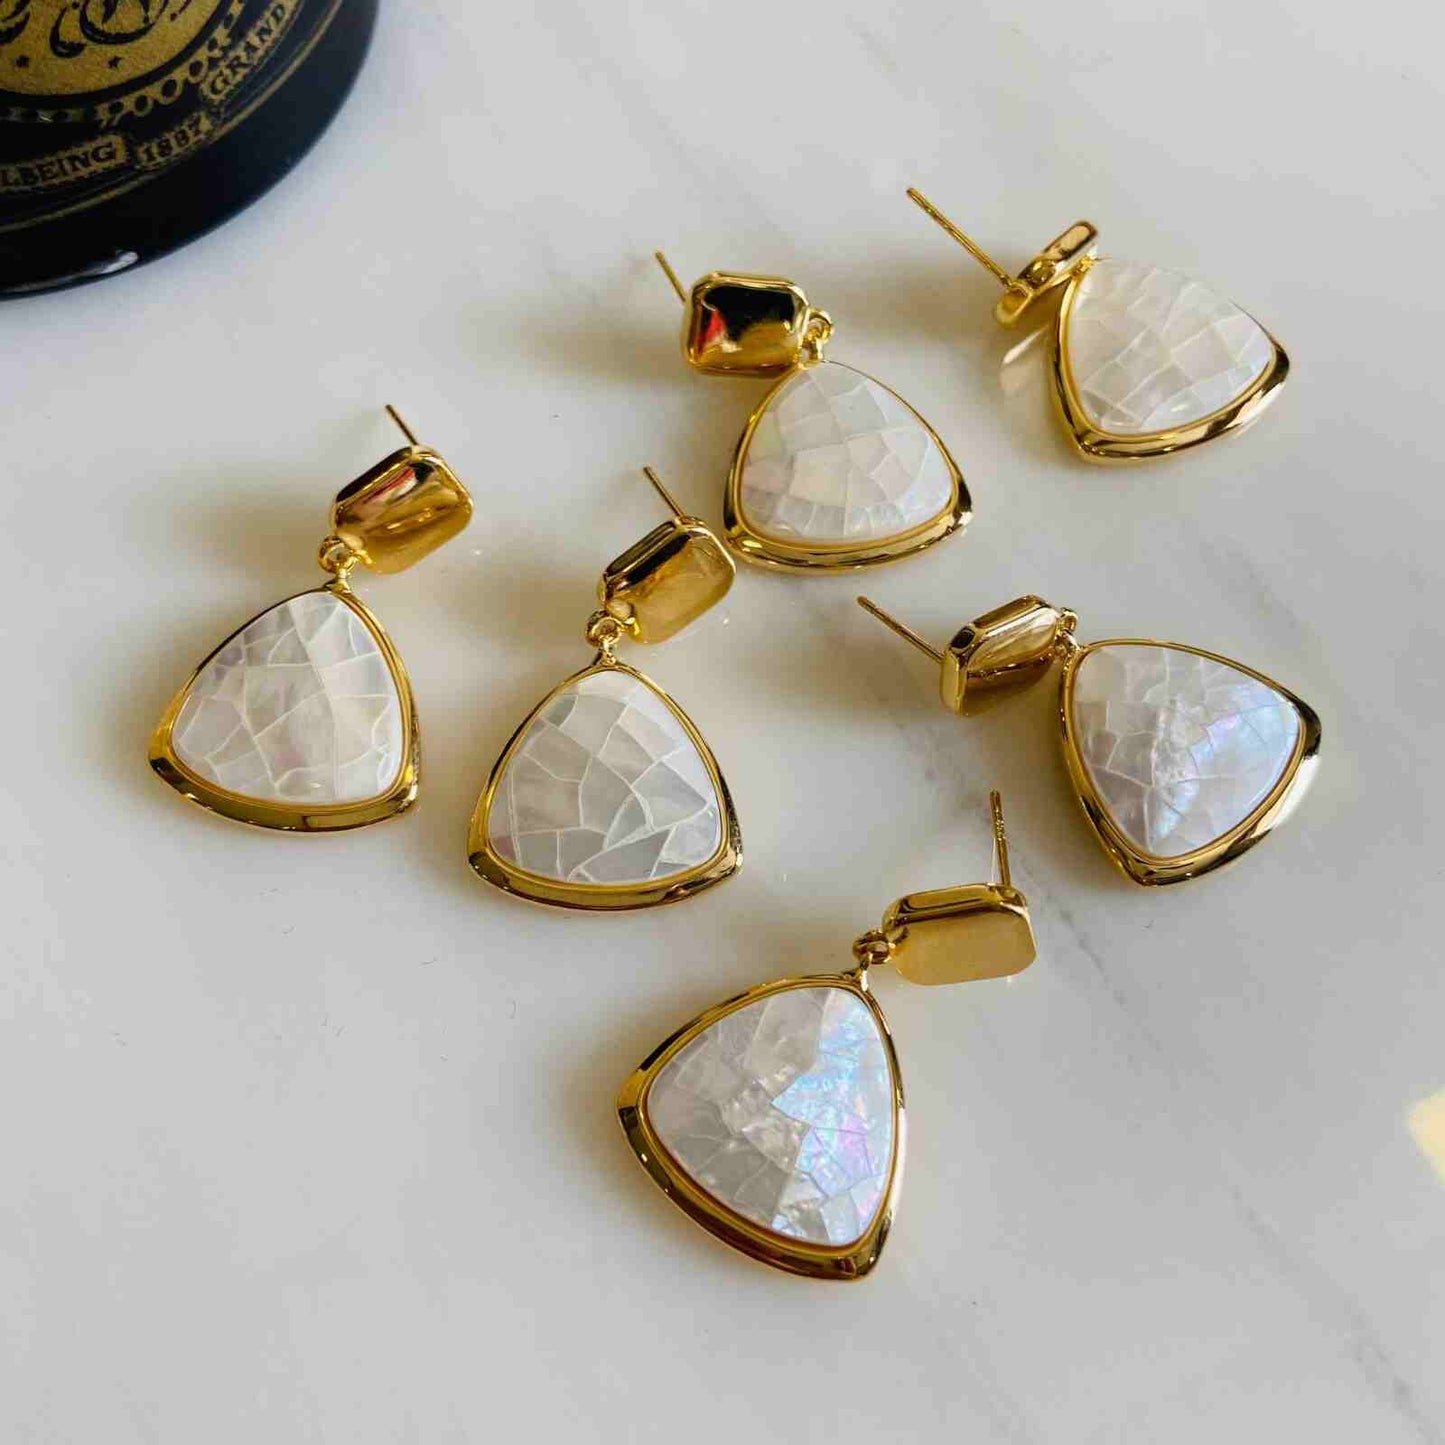 Small Earrings - By Jewellery Hat® - Fashion Jewellery February 2023 - Small Earrings